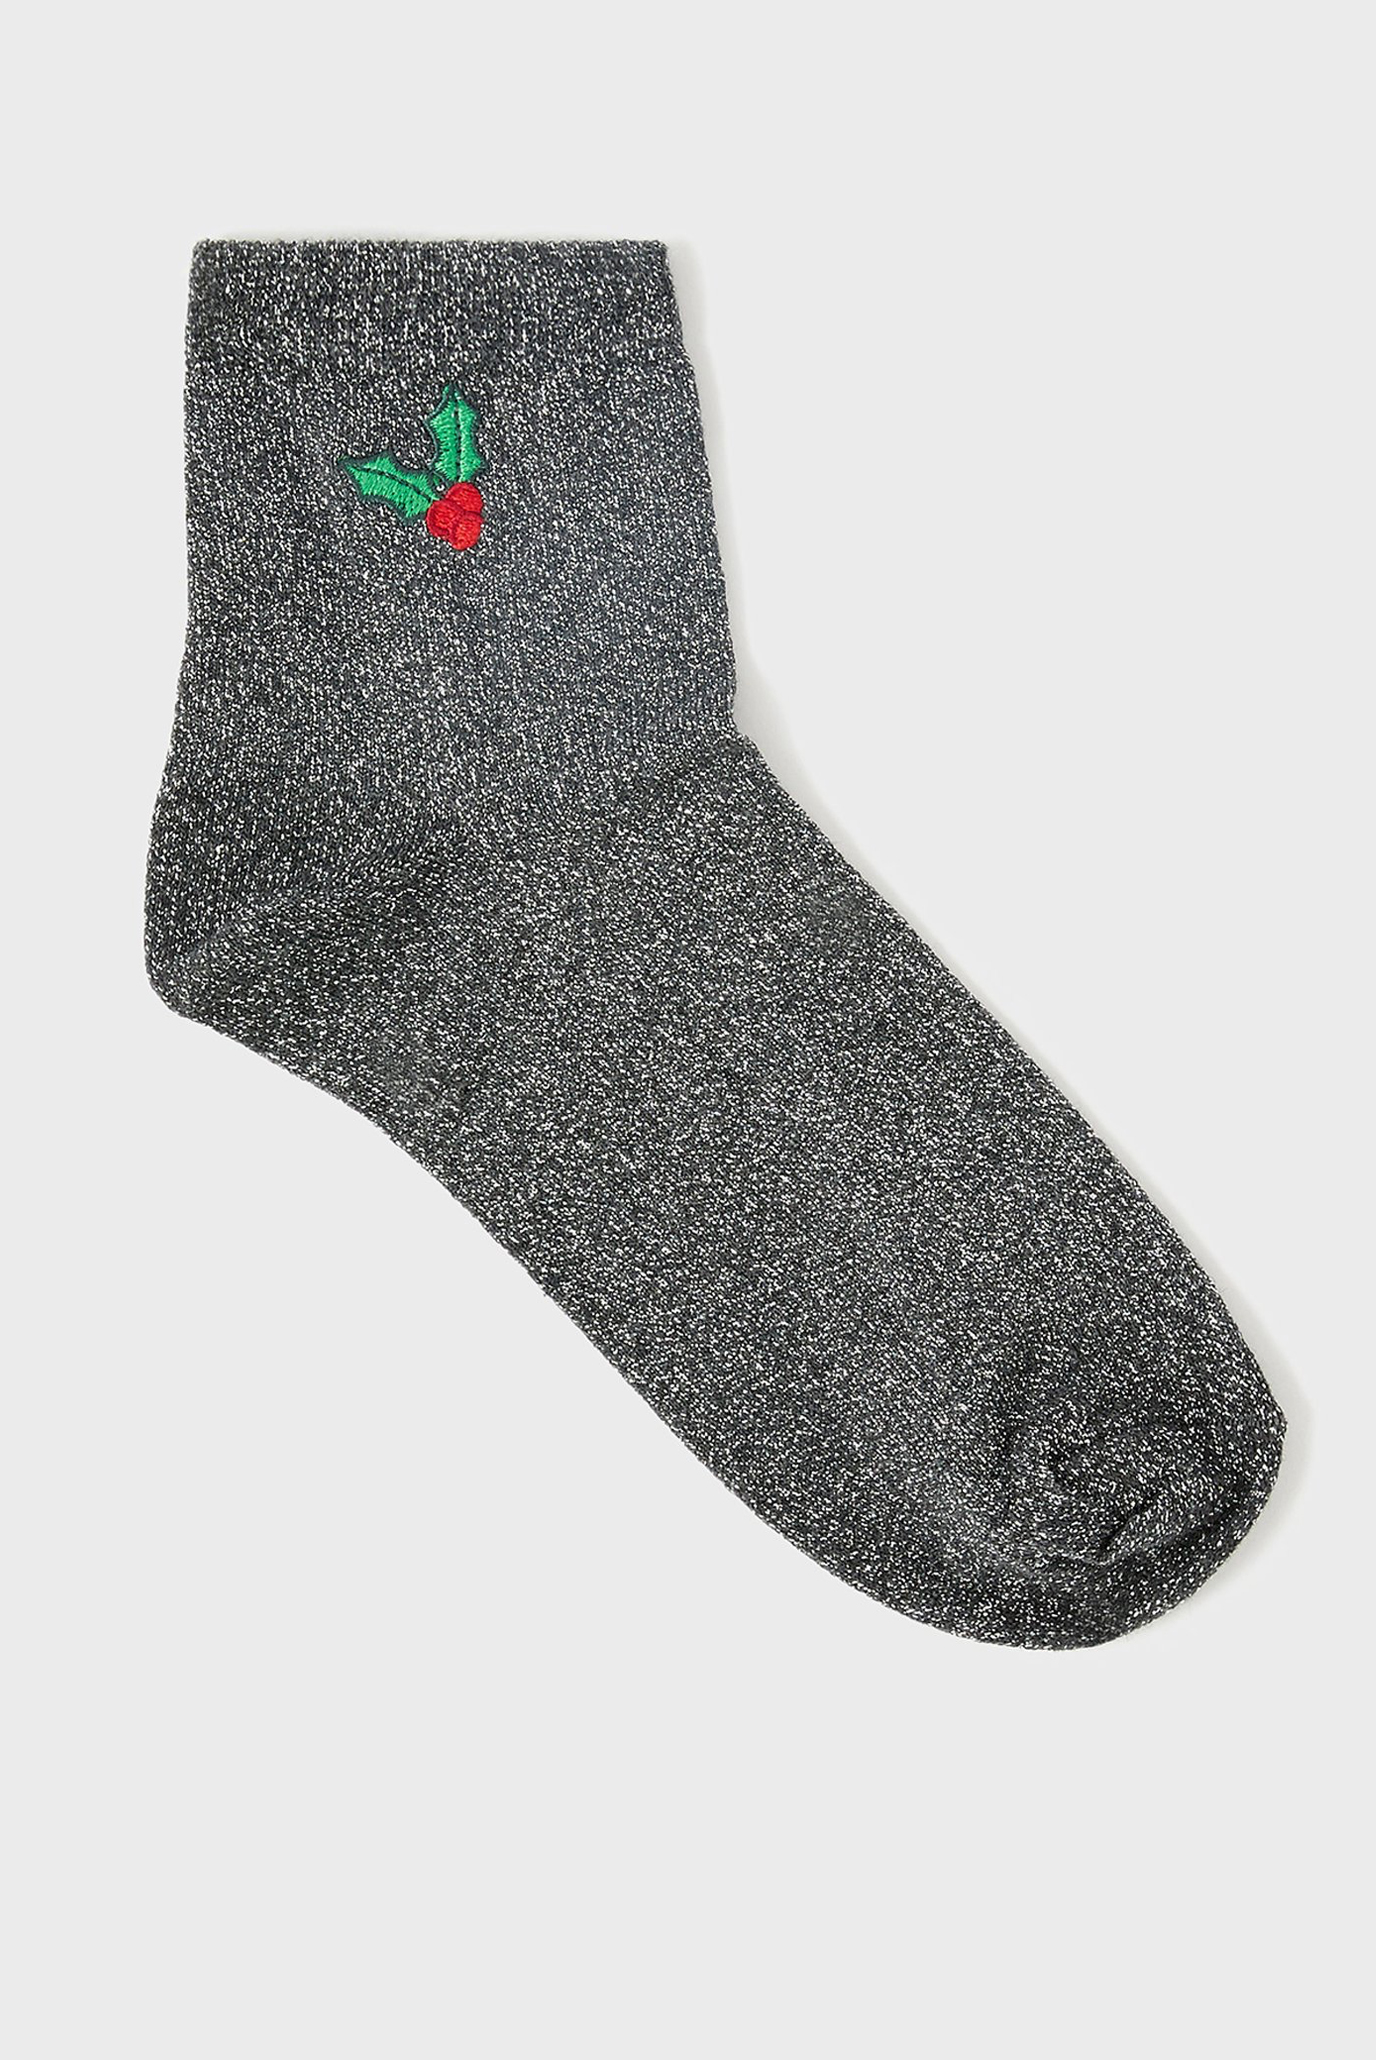 Жіночі сірі шкарпетки EMBROIDERED HOLLY 1